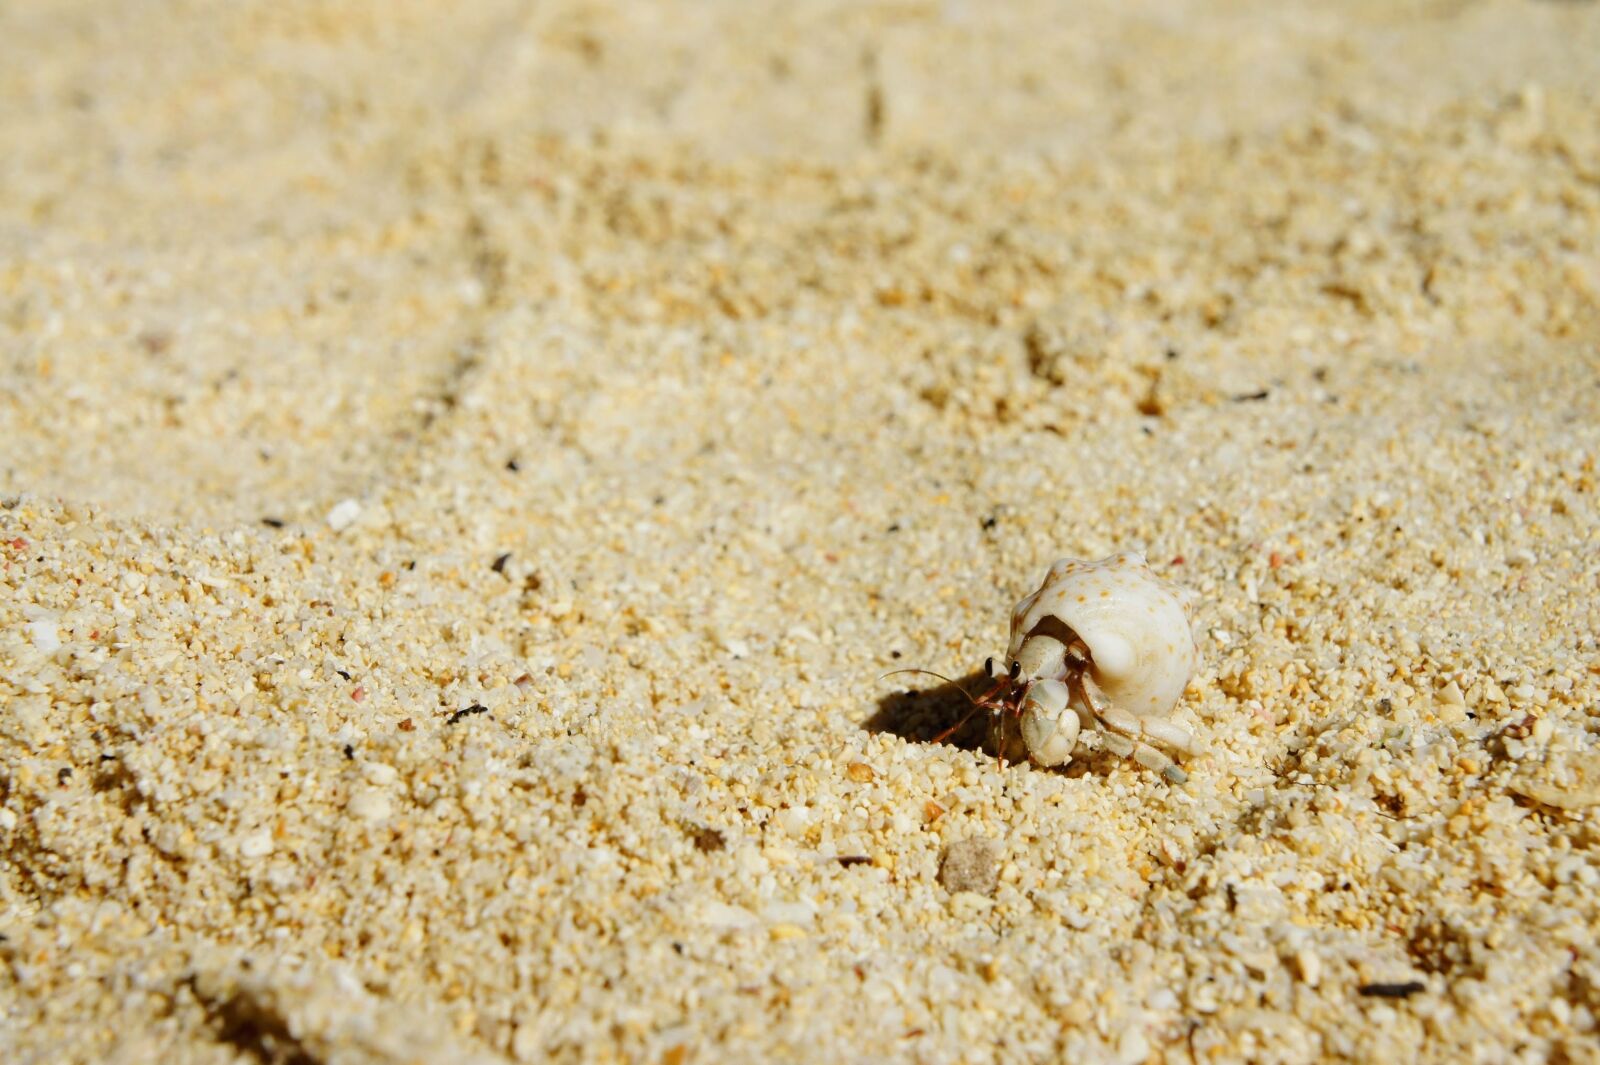 Sony Alpha NEX-5 sample photo. Cancer, shell, beach photography